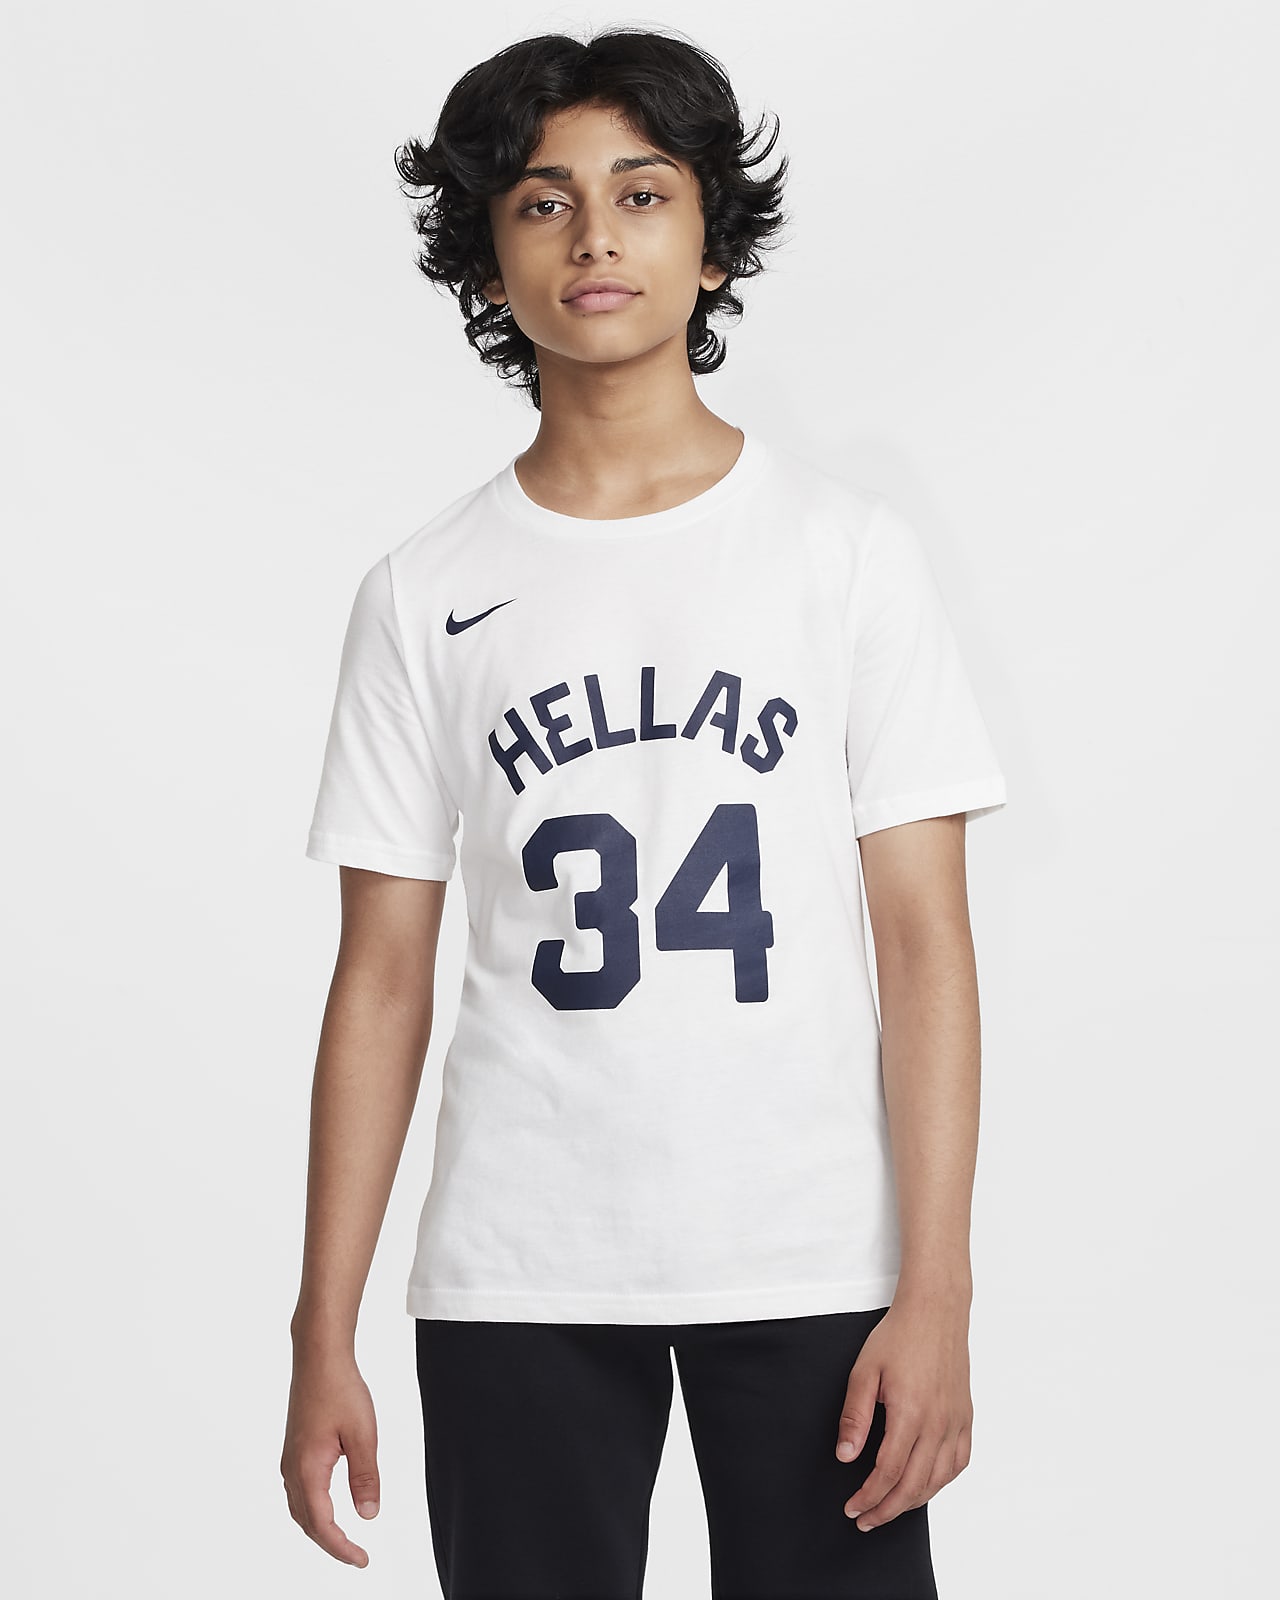 Playera de básquetbol Nike para niños talla grande Giannis Antetokounmpo Greece